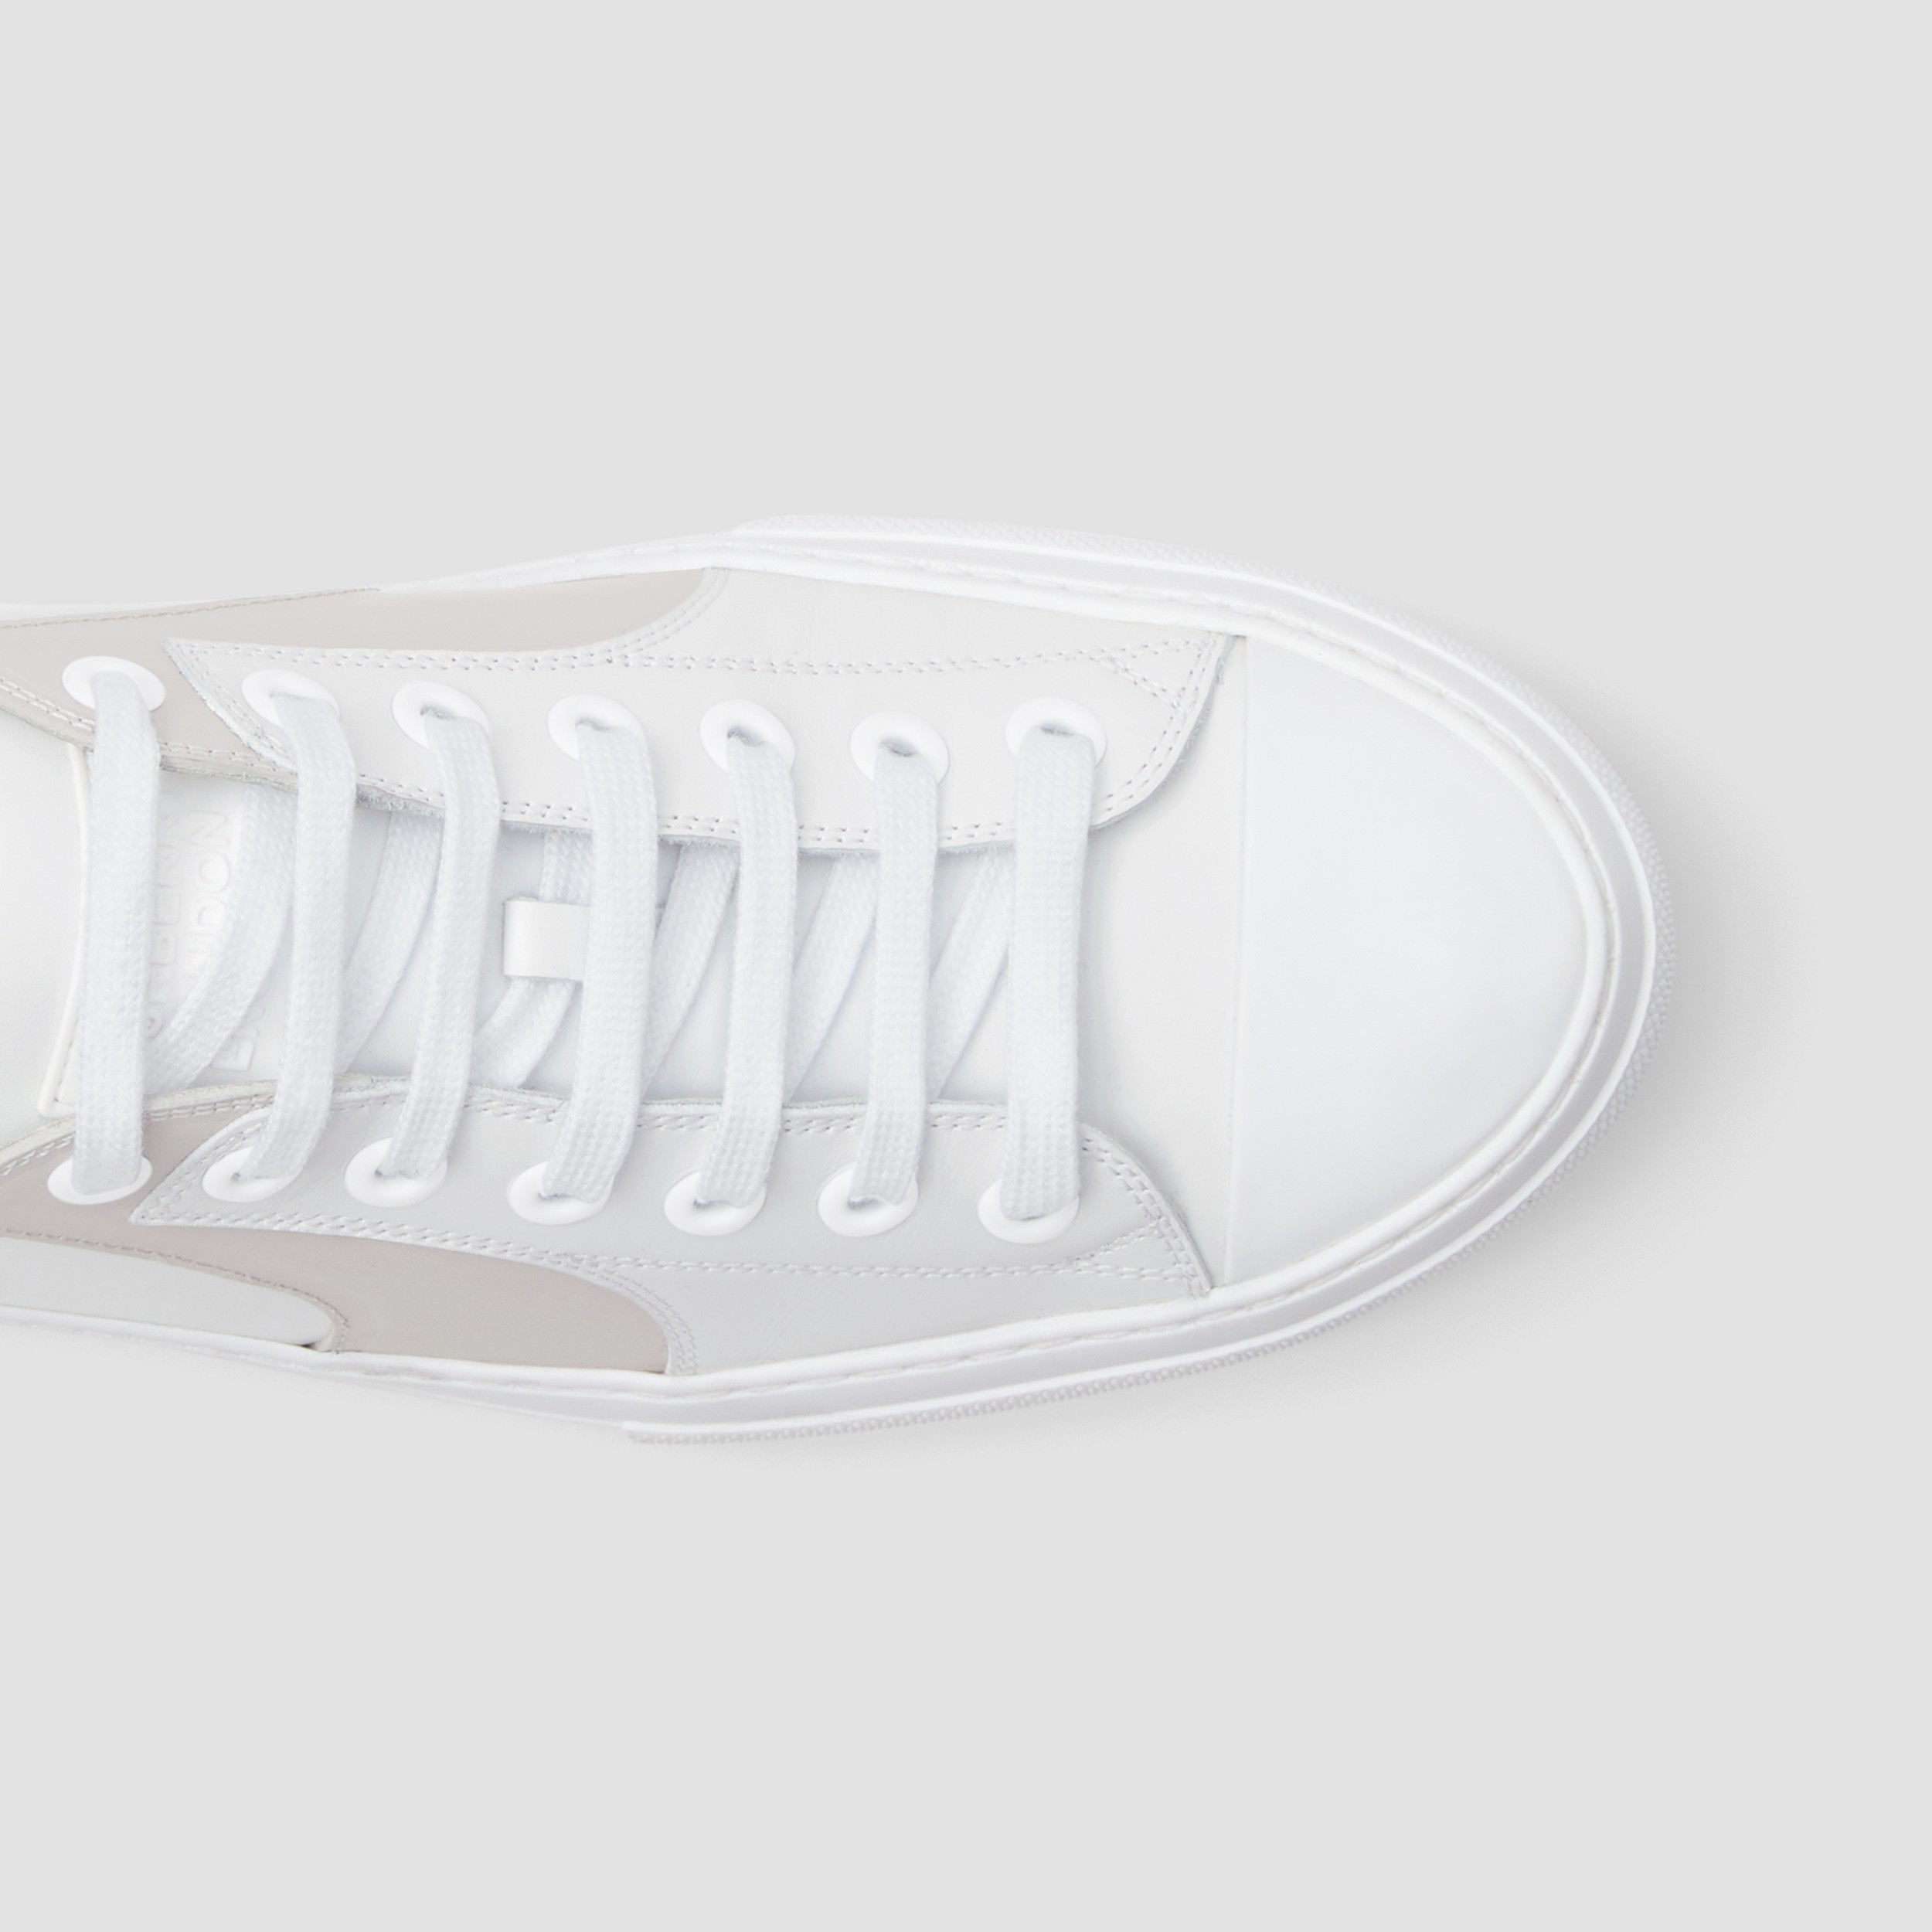 Sneaker in pelle bicolore (Bianco/grigio) - Uomo | Sito ufficiale Burberry® - 2